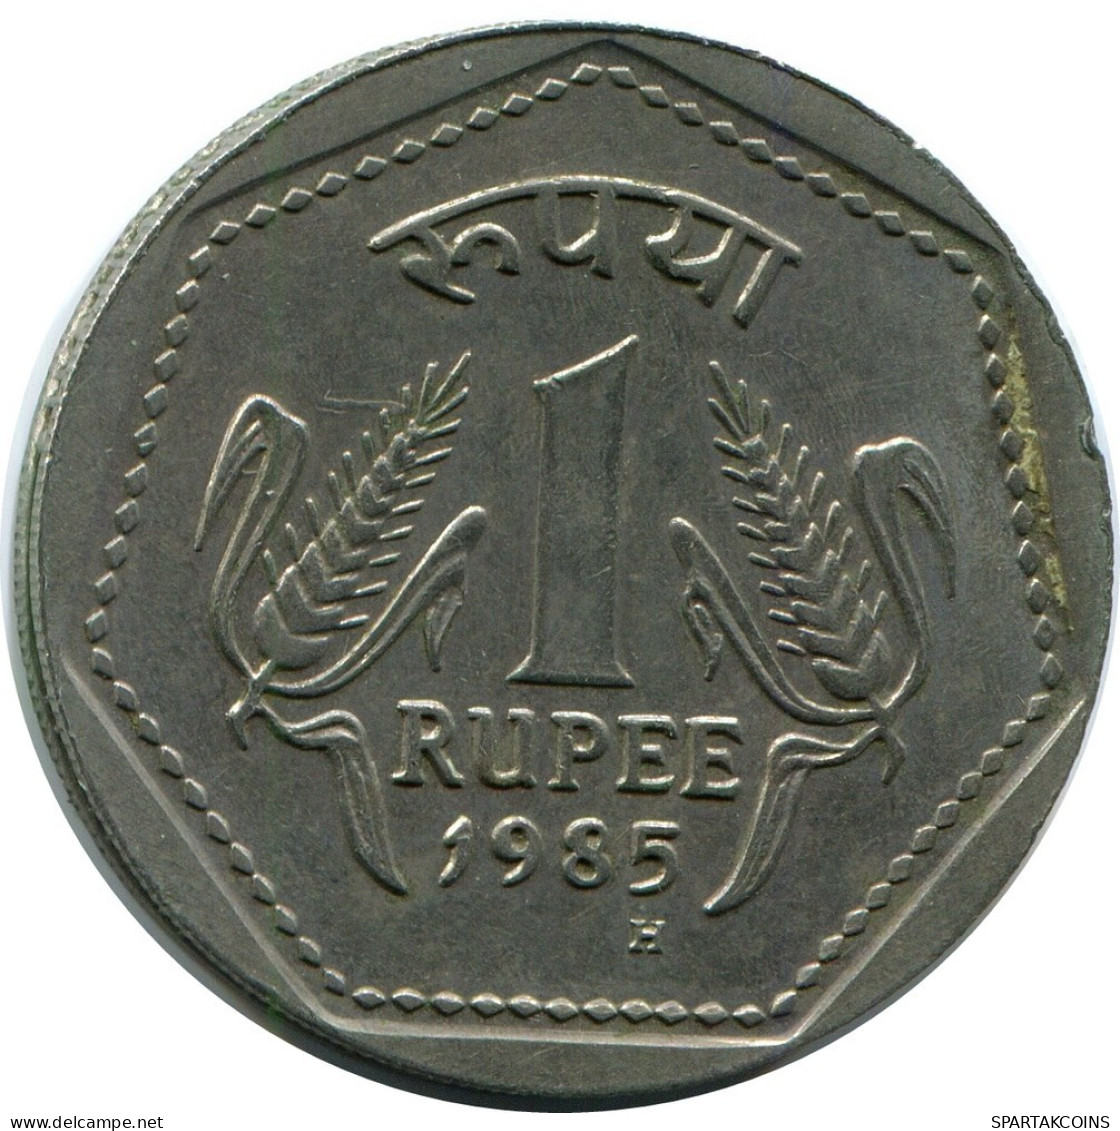 1 RUPEE 1985 INDIEN INDIA Münze #AR891.D.A - India